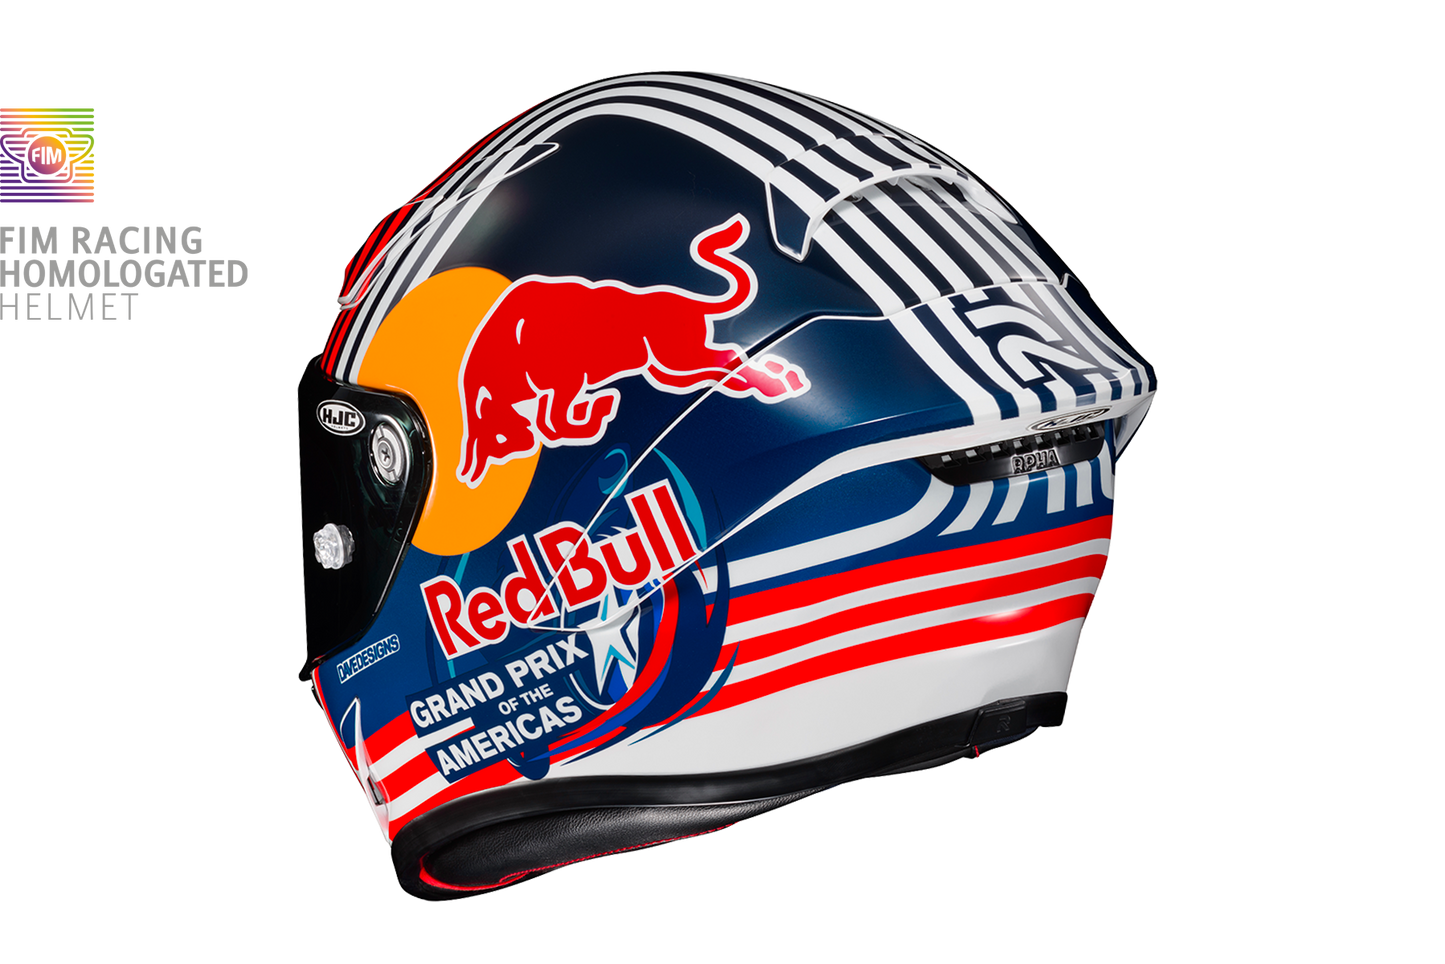 Casque intégral HJC RPHA 1 Red Bull Austin GP